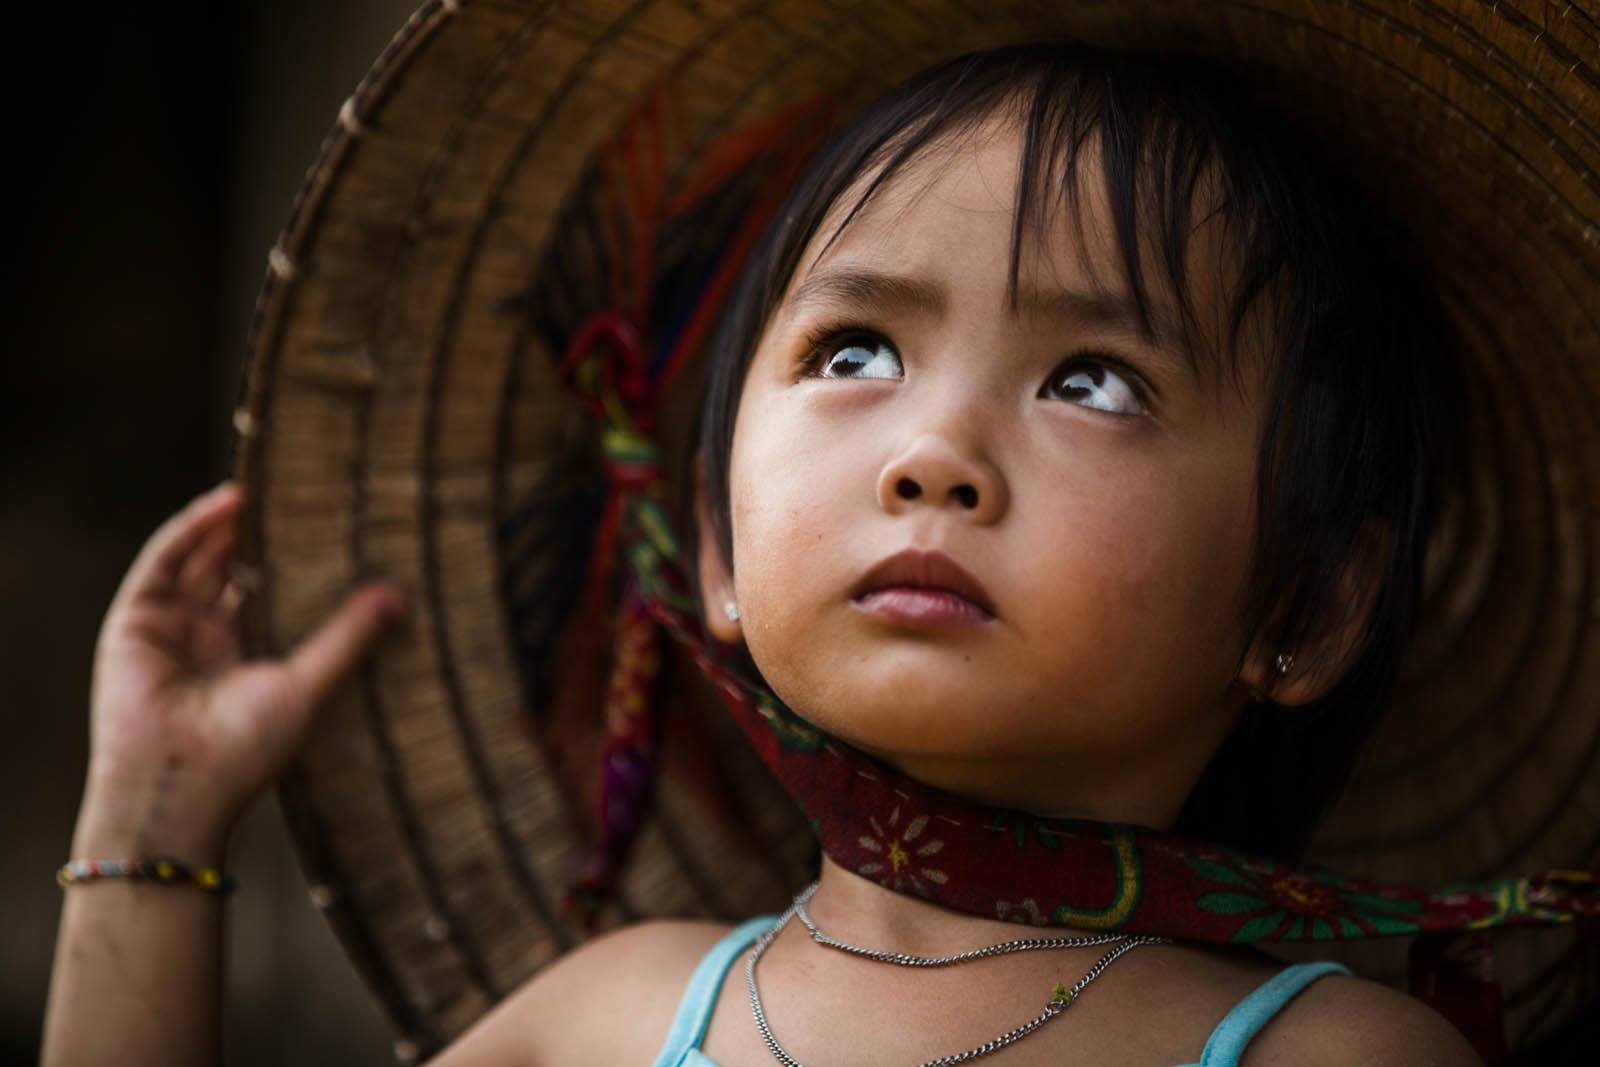 Thưởng thức những bức ảnh về vùng cao Việt Nam nơi mang đầy ắp nét đẹp đồng bào dân tộc và sự hoang dã của thiên nhiên. Những lối đi, con người hay nét hình ảnh về các nghi lễ tôn giáo đặc sắc sẽ đem đến cho bạn trải nghiệm đầy mới mẻ và thú vị.